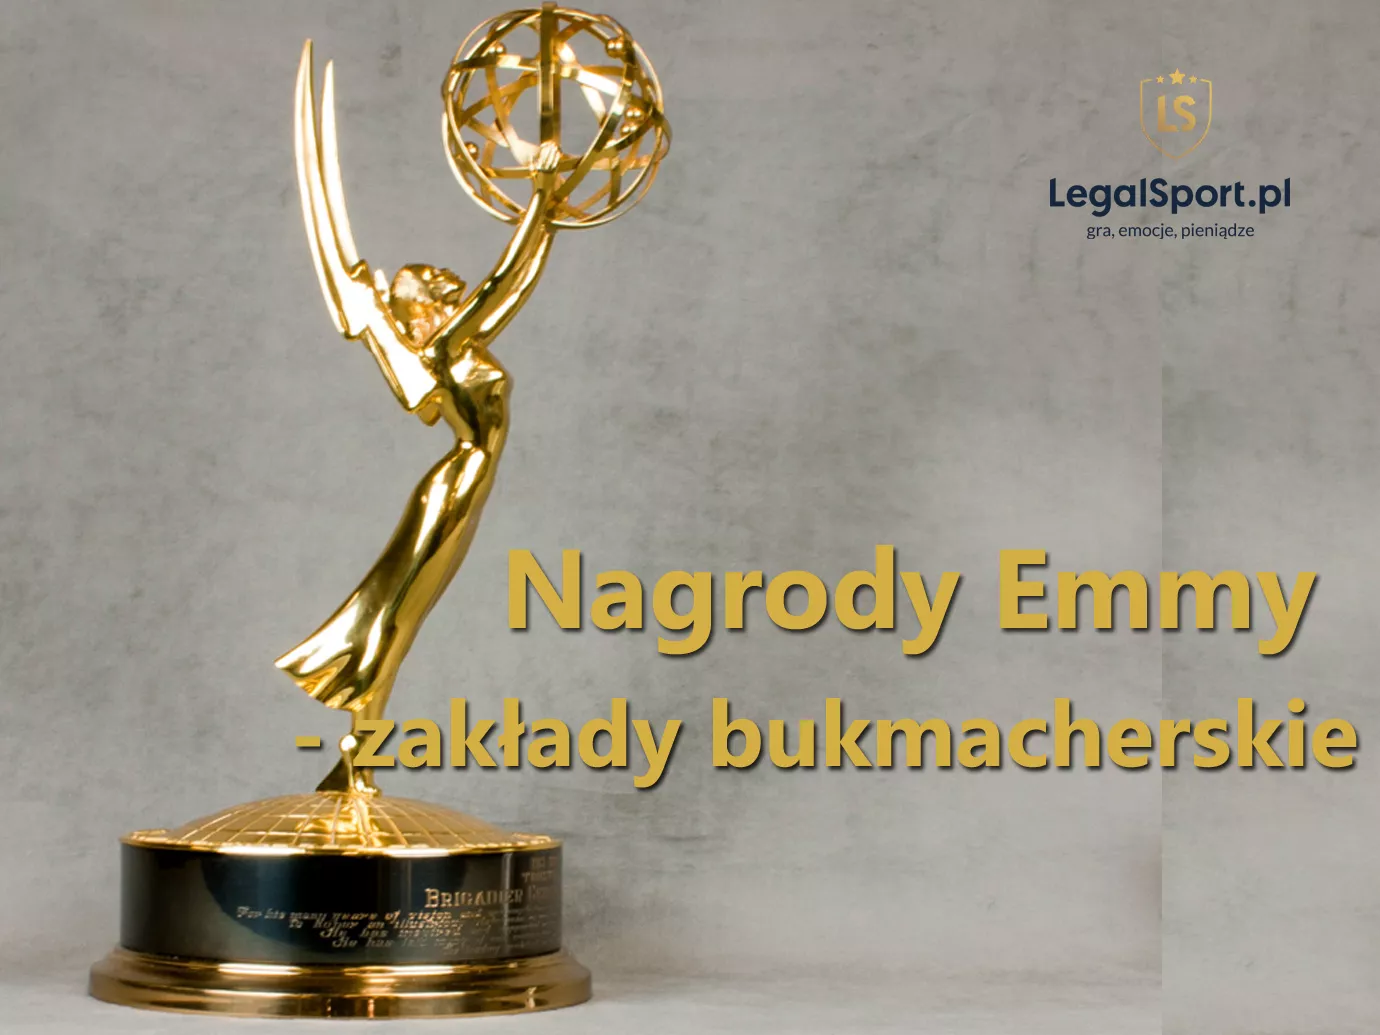 Zakłady bukmacherskie na Nagrody Emmy - co obstawiać?